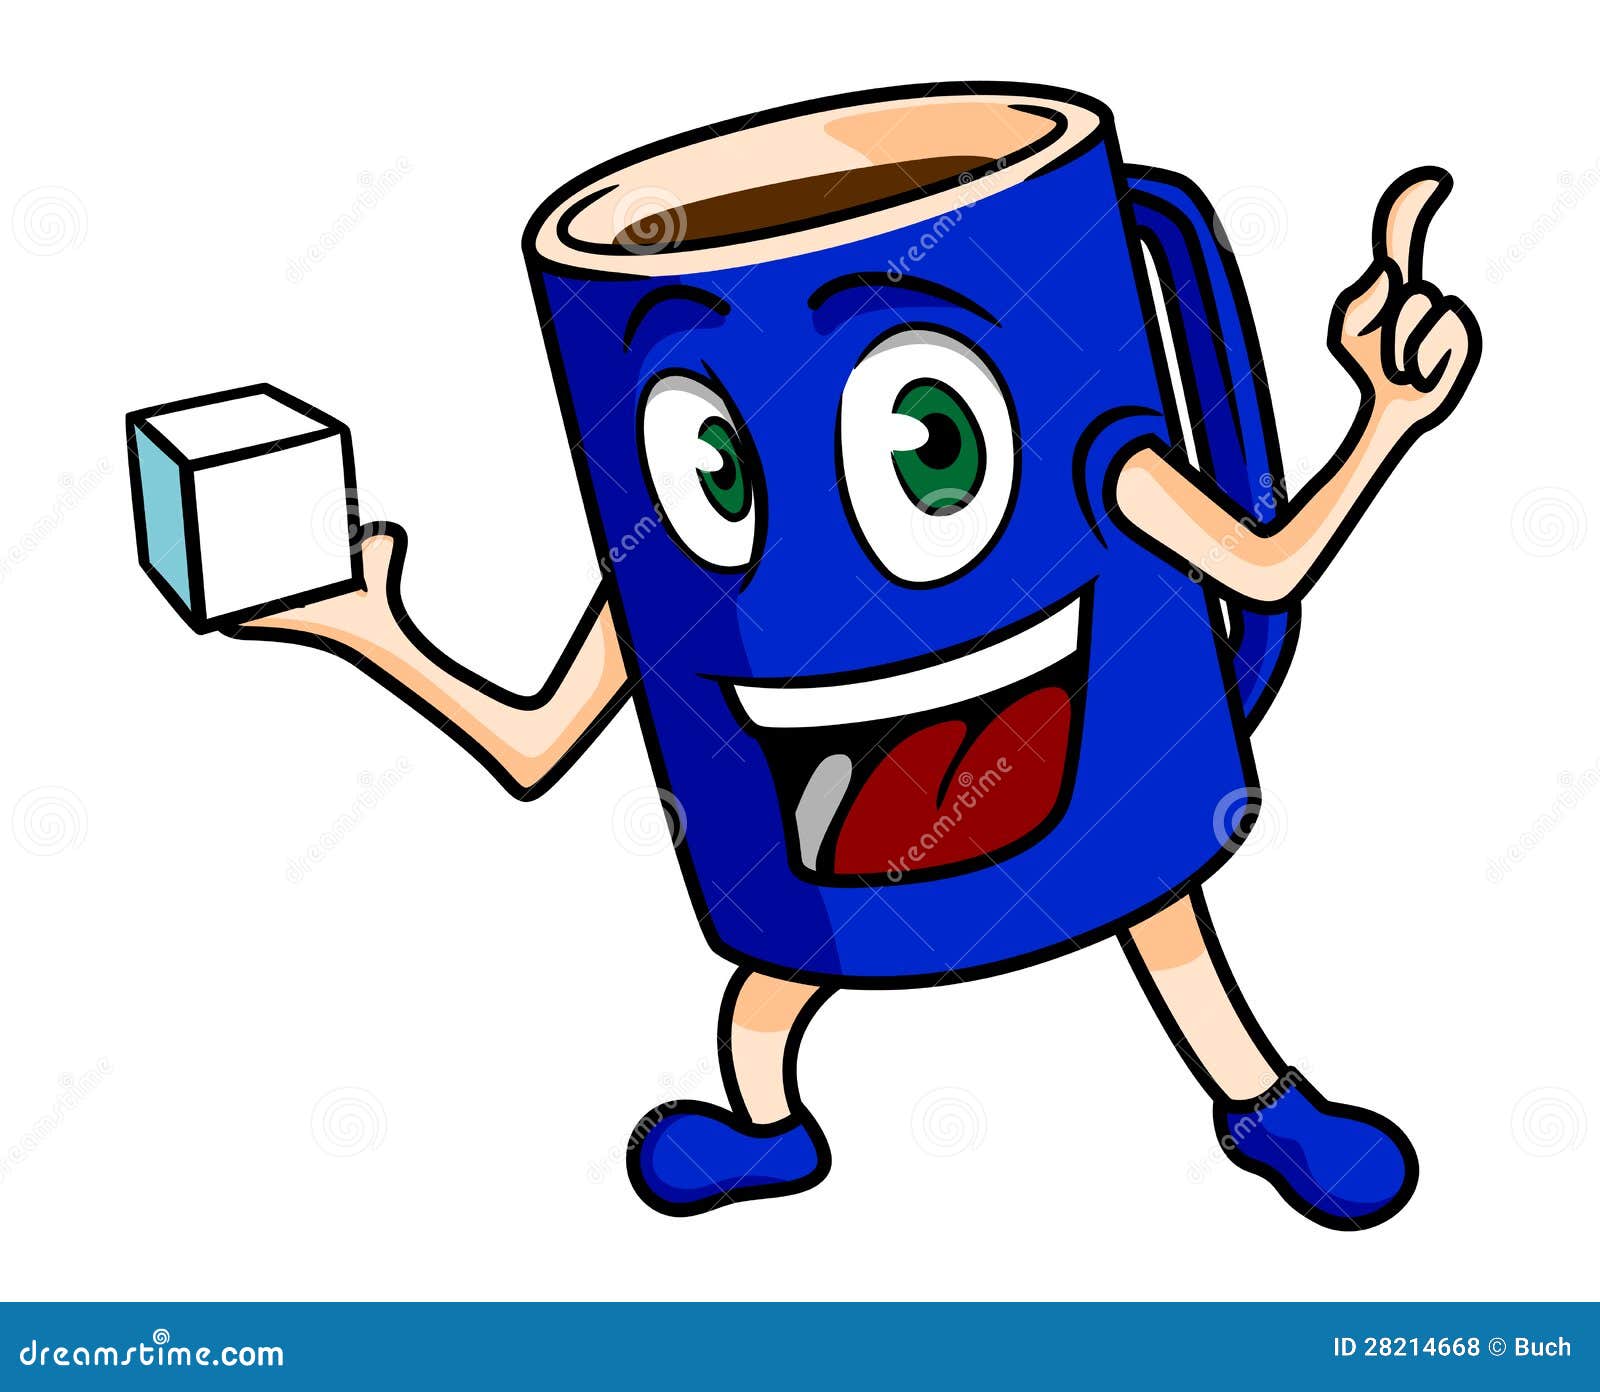 Cartoon Tea Cup Royalty Free Stock Photos - Image: 28214668